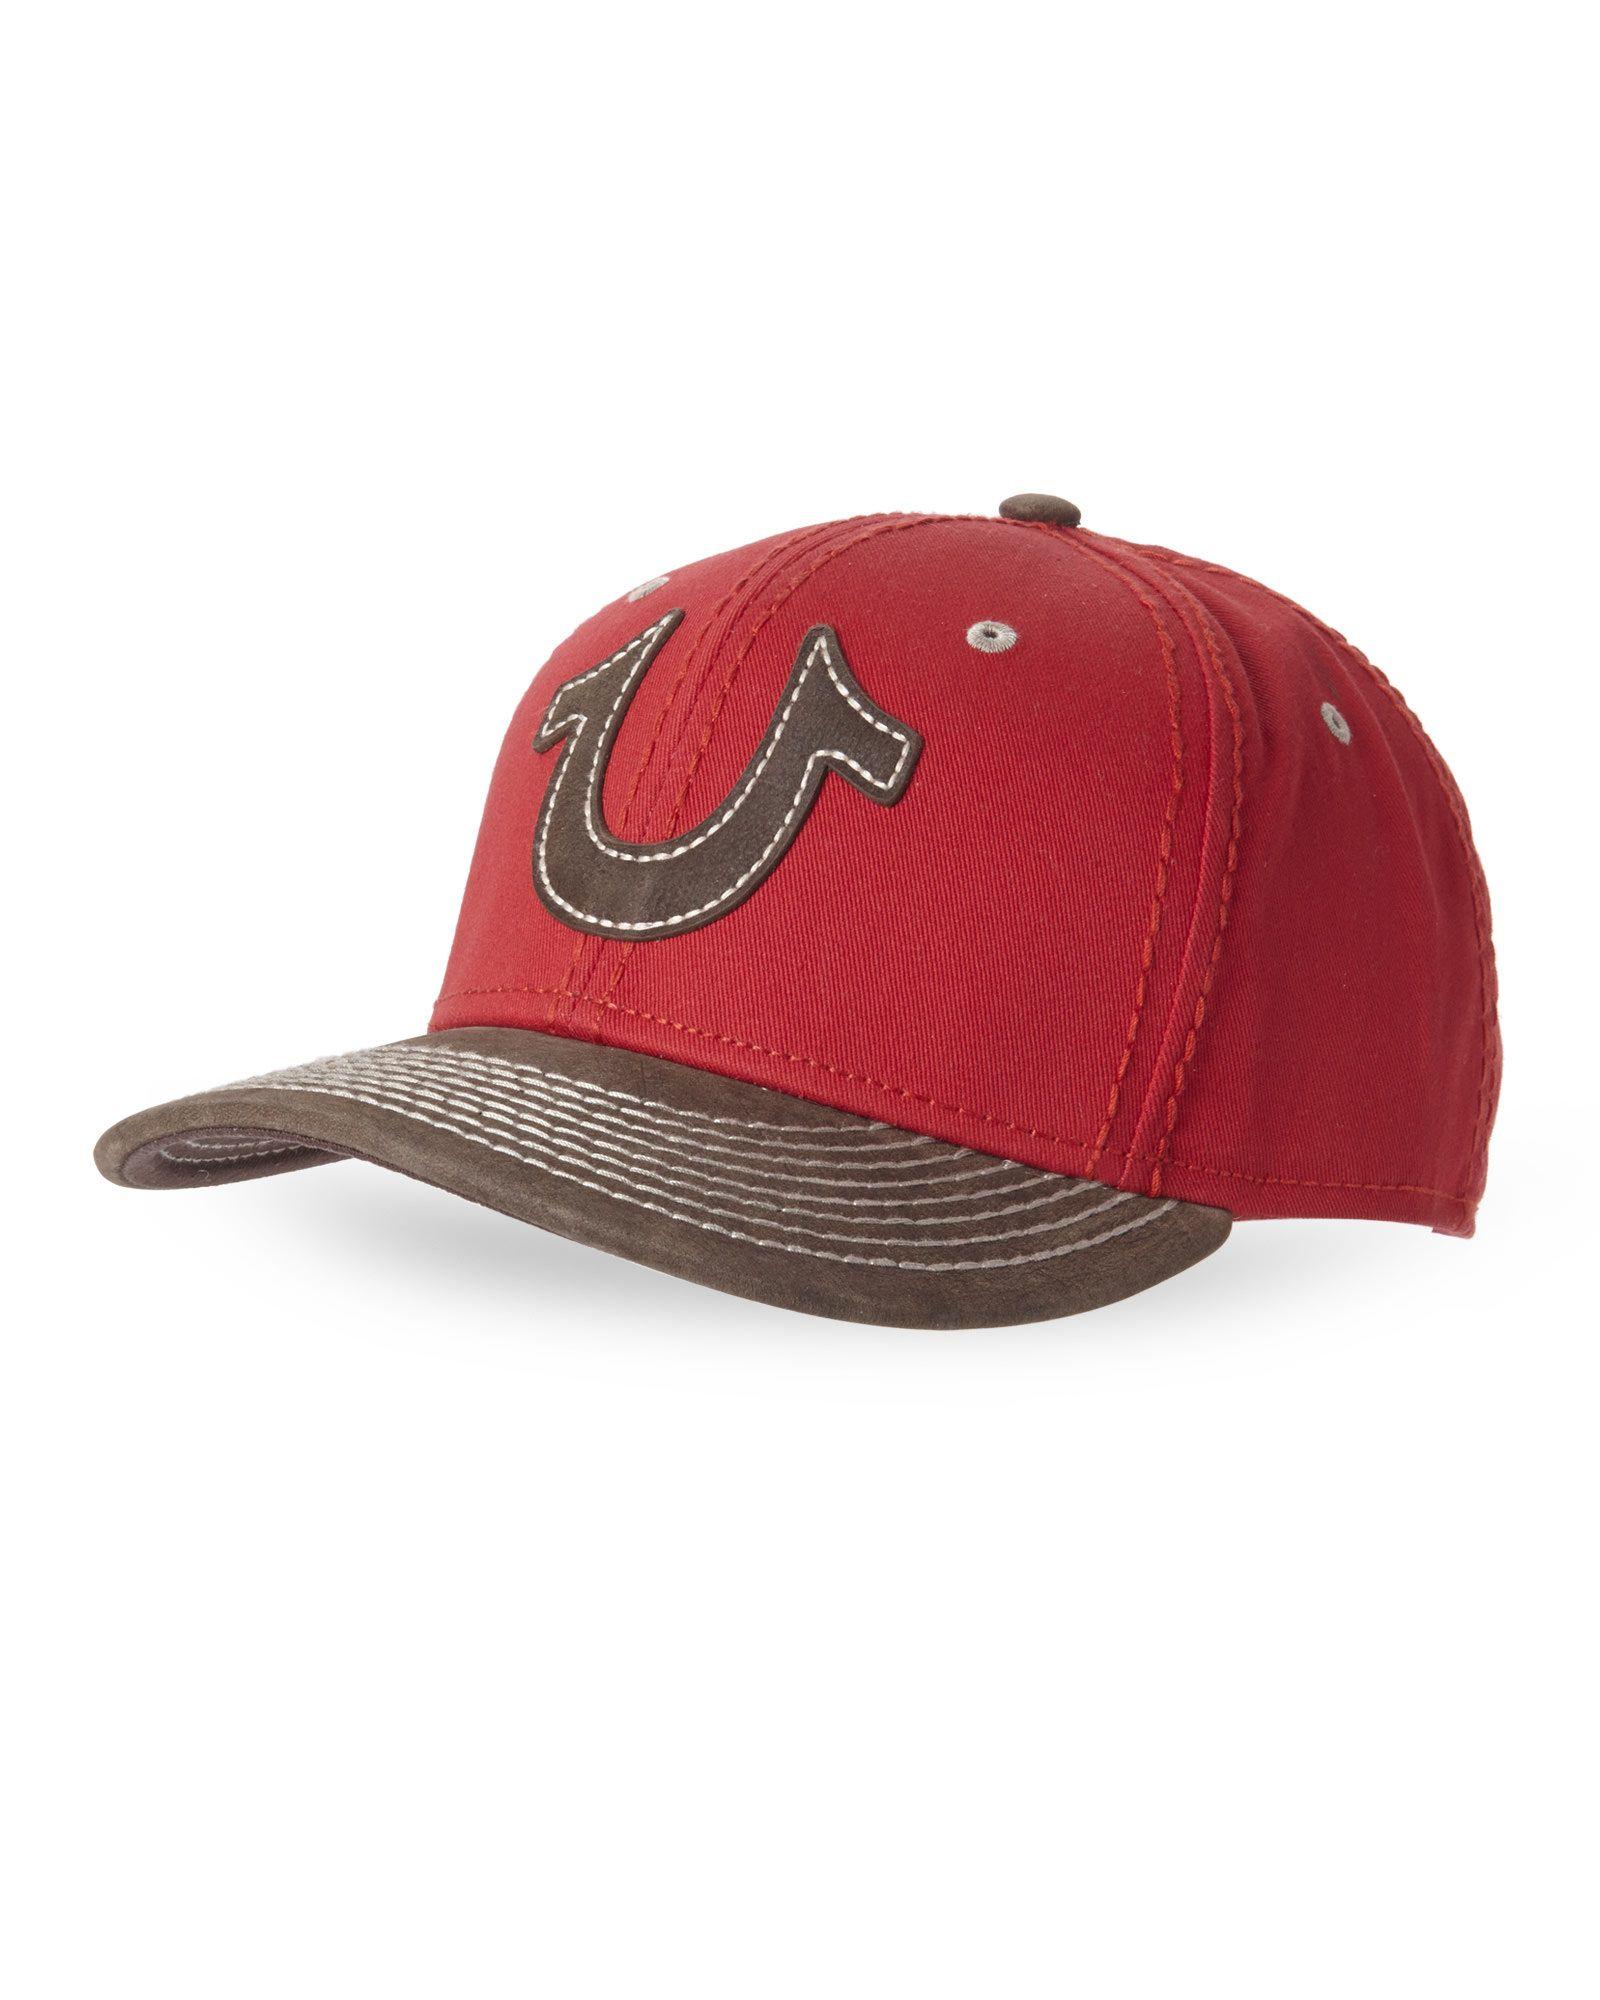 Red Horseshoe Logo - Lyst - True Religion Red Horseshoe Baseball Cap in Red for Men